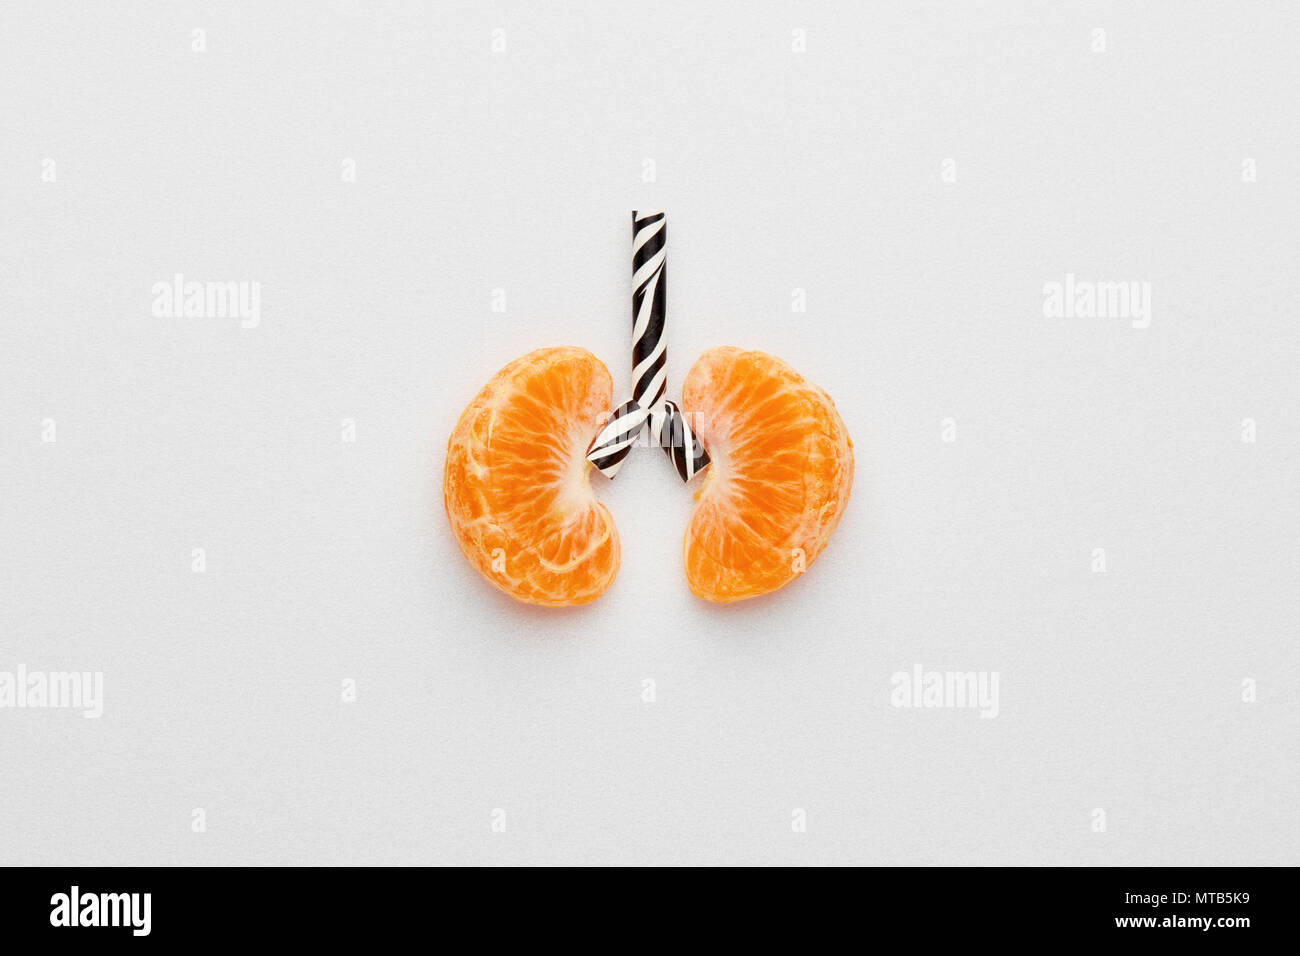 Image conceptuelle des poumons humains. La mandarine et la paille conçu comme lung sur fond blanc avec l'exemplaire de l'espace. Banque D'Images